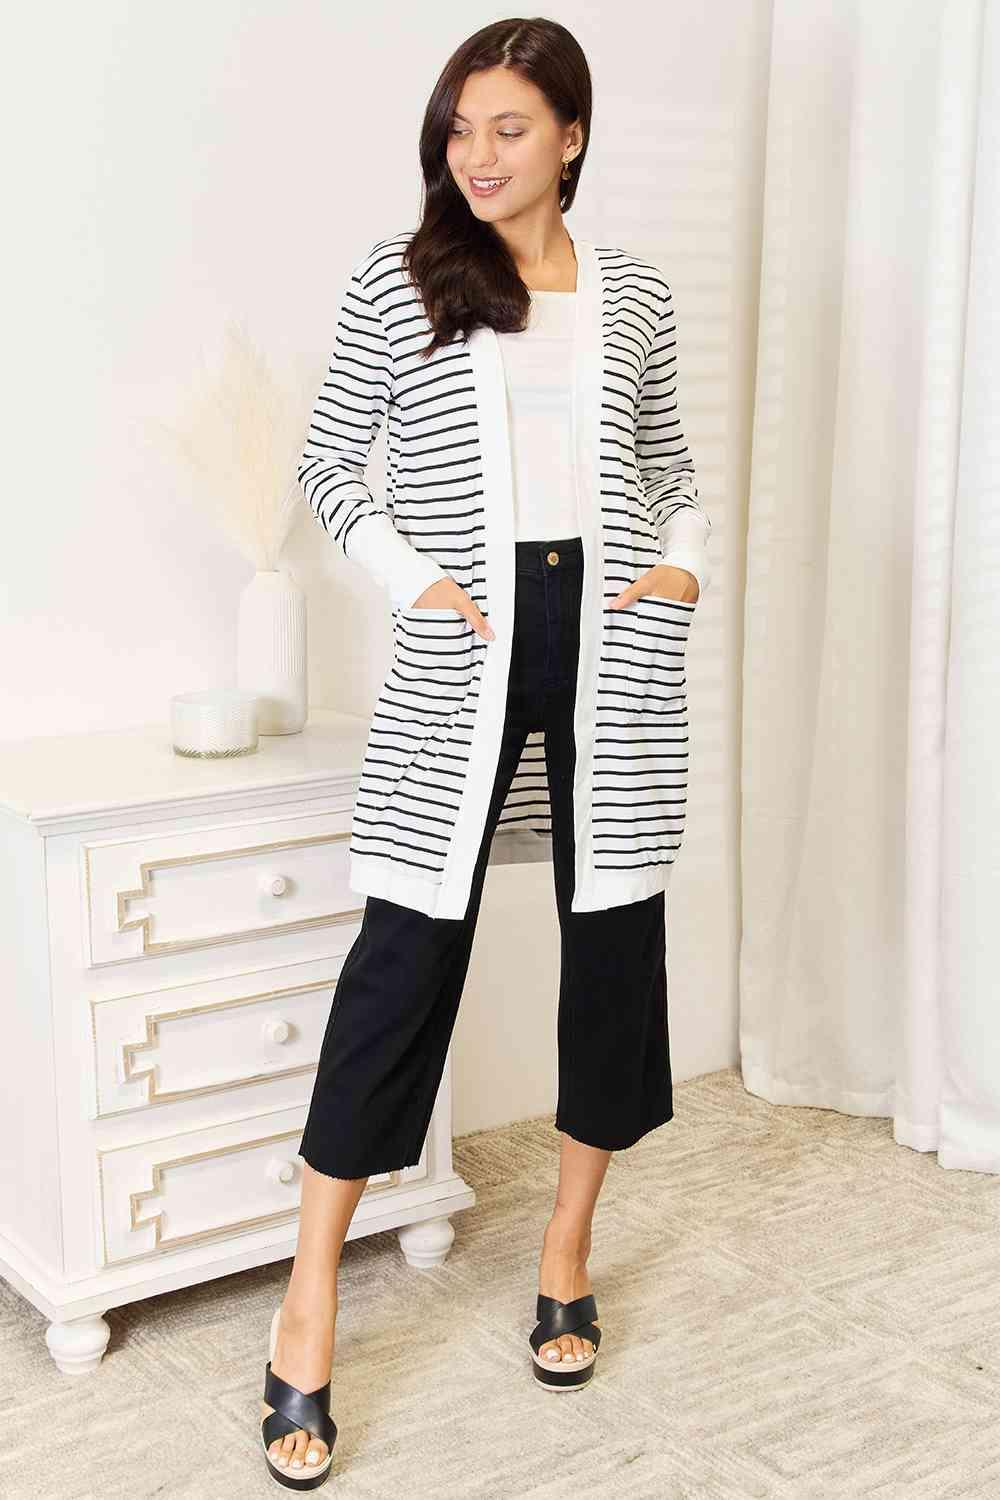 Double Take Striped Open Front Longline Cardigan - AMIClubwear